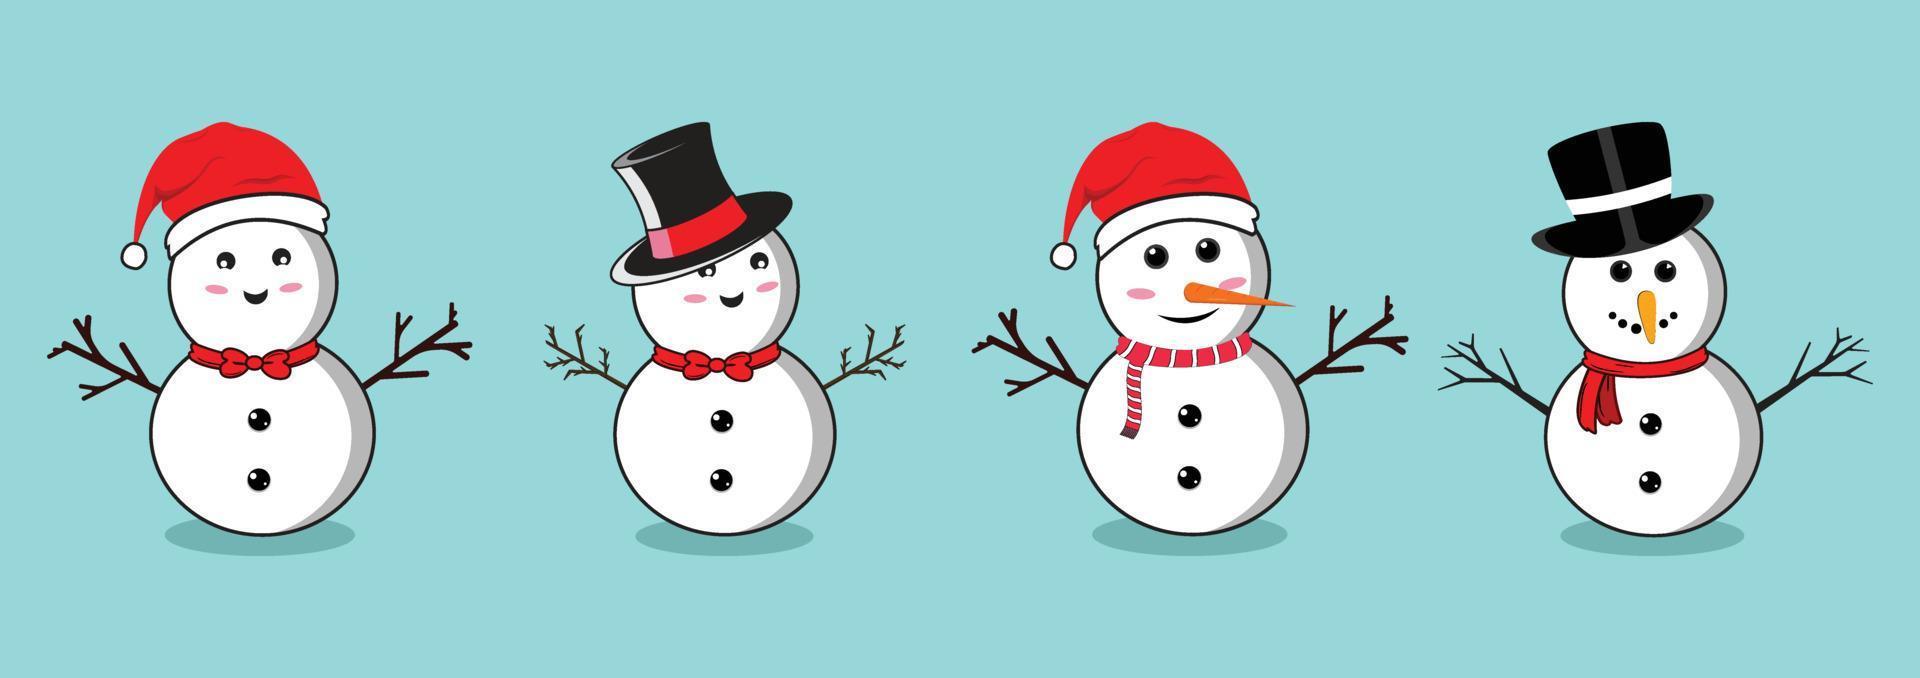 kerst sneeuwpop set met lachende gezichten en hoeden. platte sneeuwpop collectie op een blauwe achtergrond. kerstsneeuwpop plat ontwerp met boomtakken, knopen, vlinderdas, neksjaal en wortelneuzen. vector